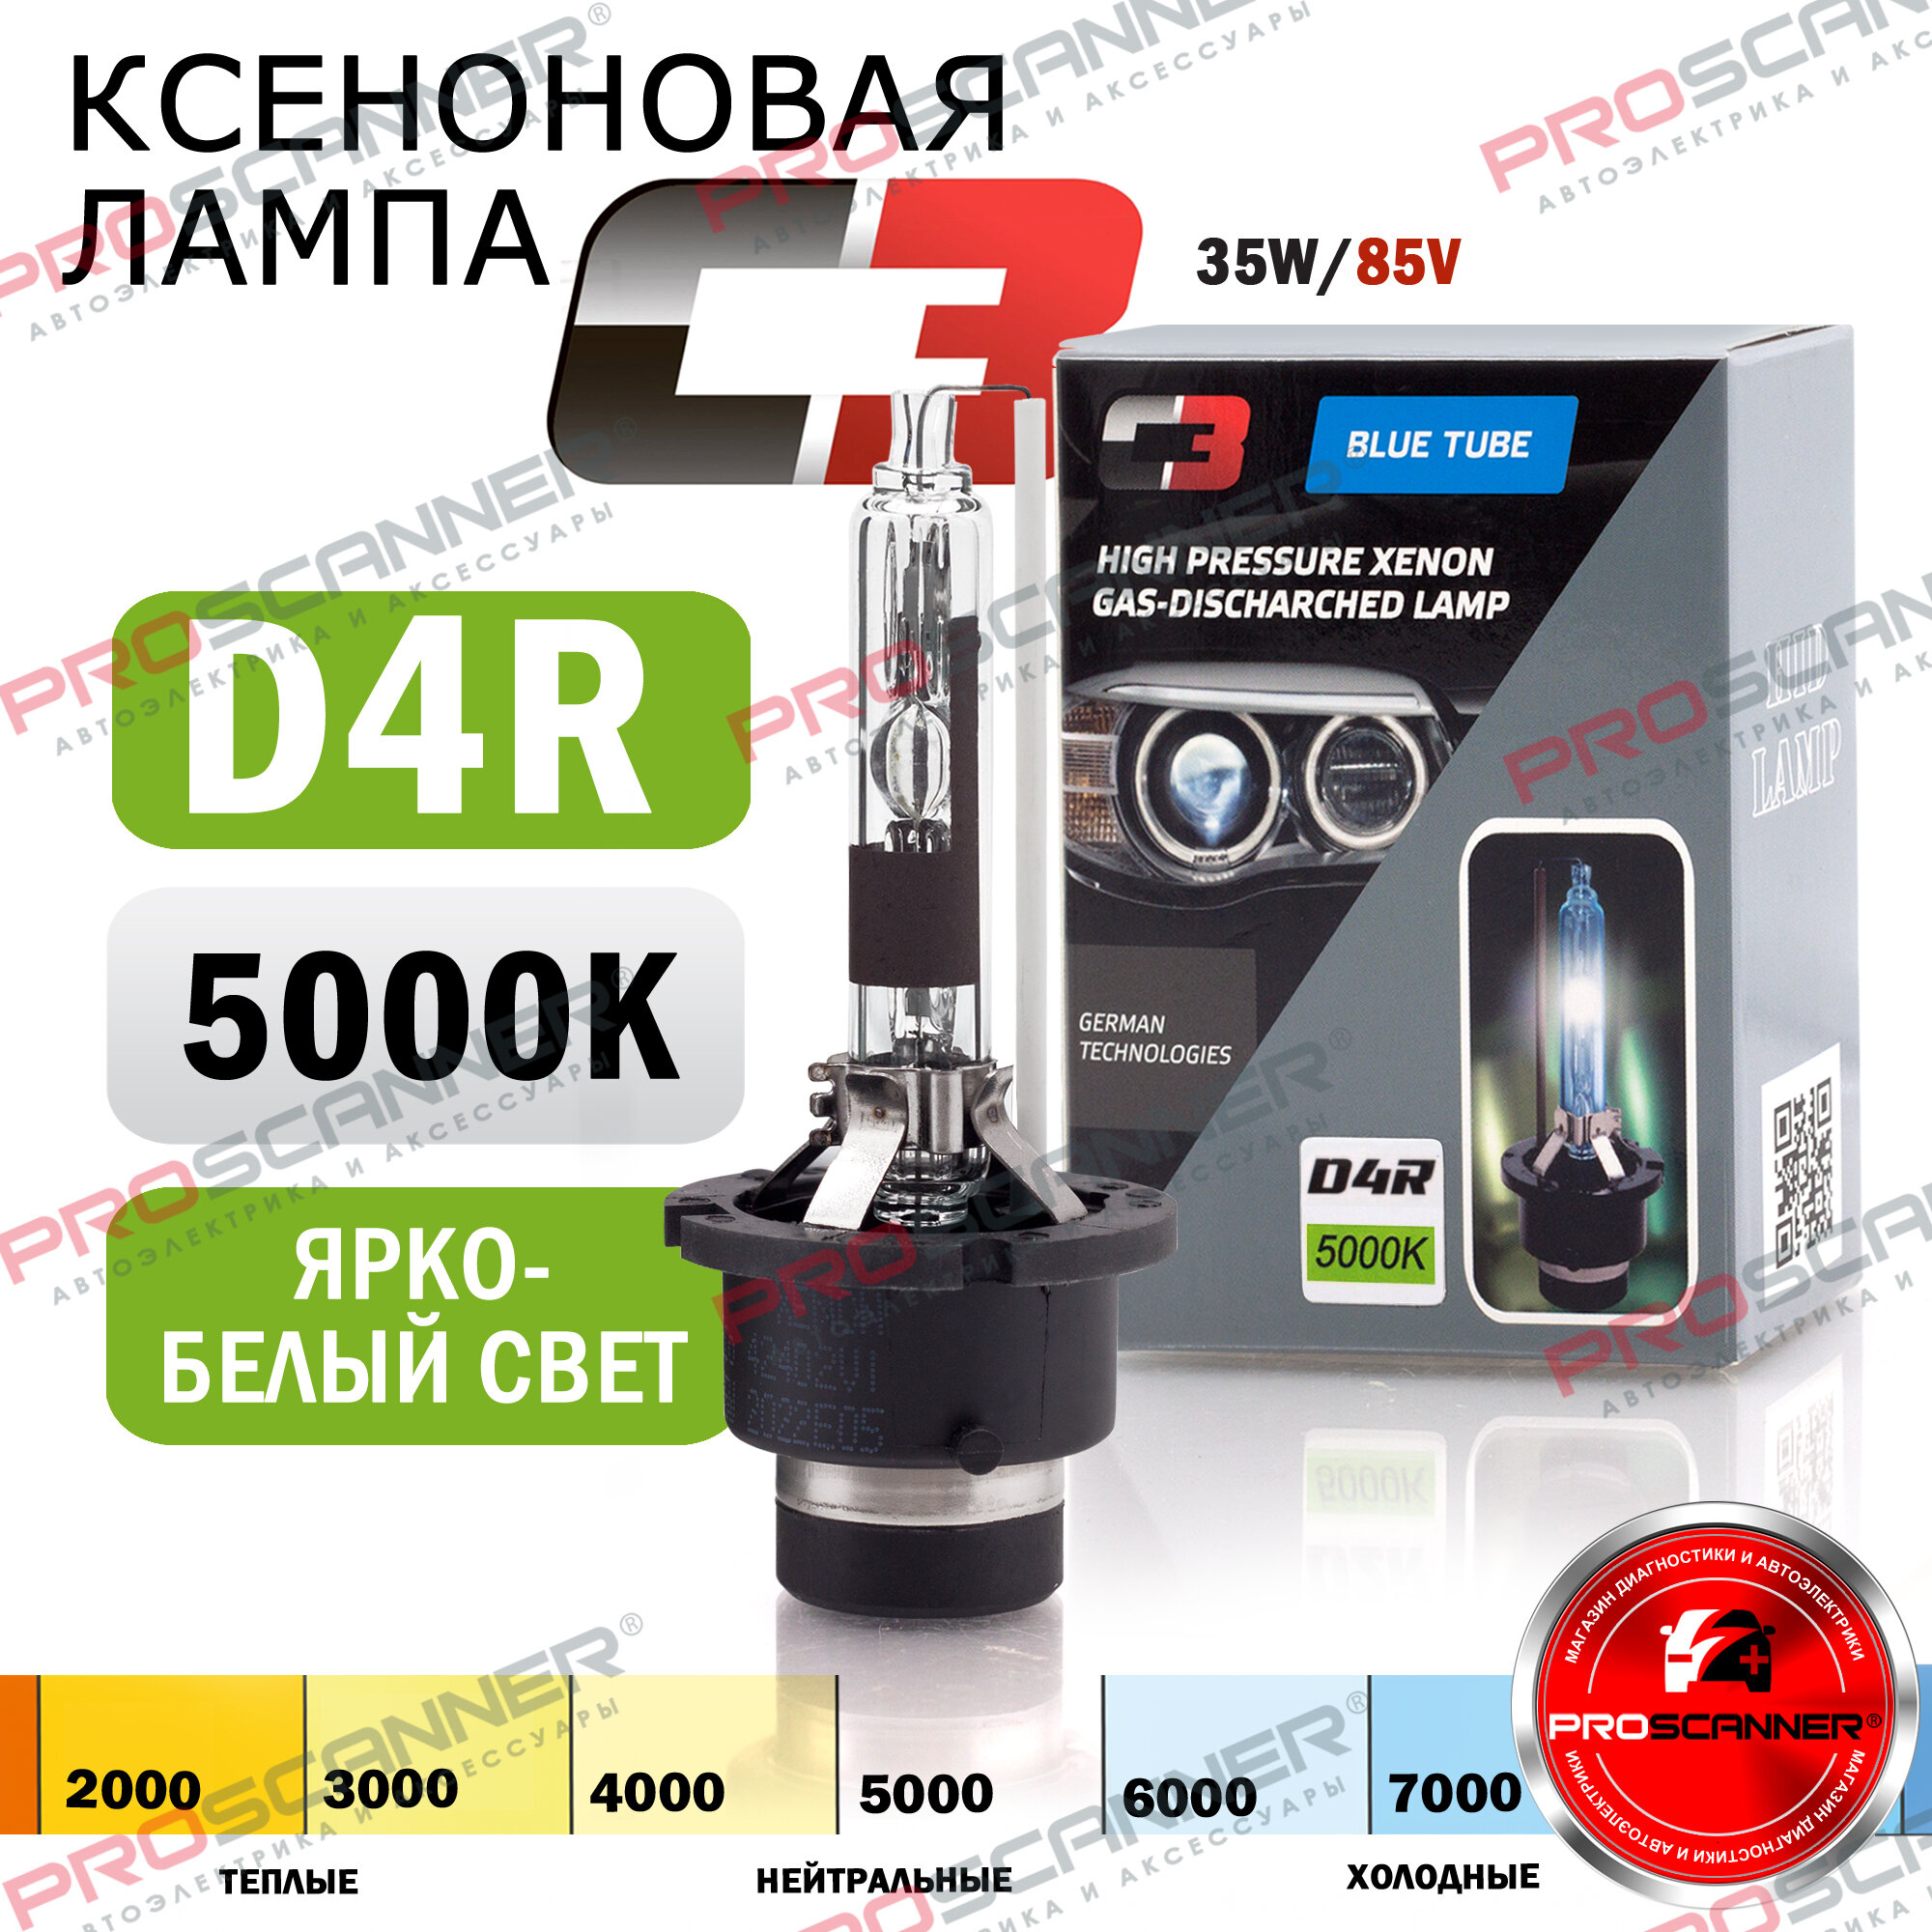 Ксеноновая лампа С-3 D4R 5000K температура света, для автомобиля штатный ксенон, питание 12V, мощность 35W, 1 штука